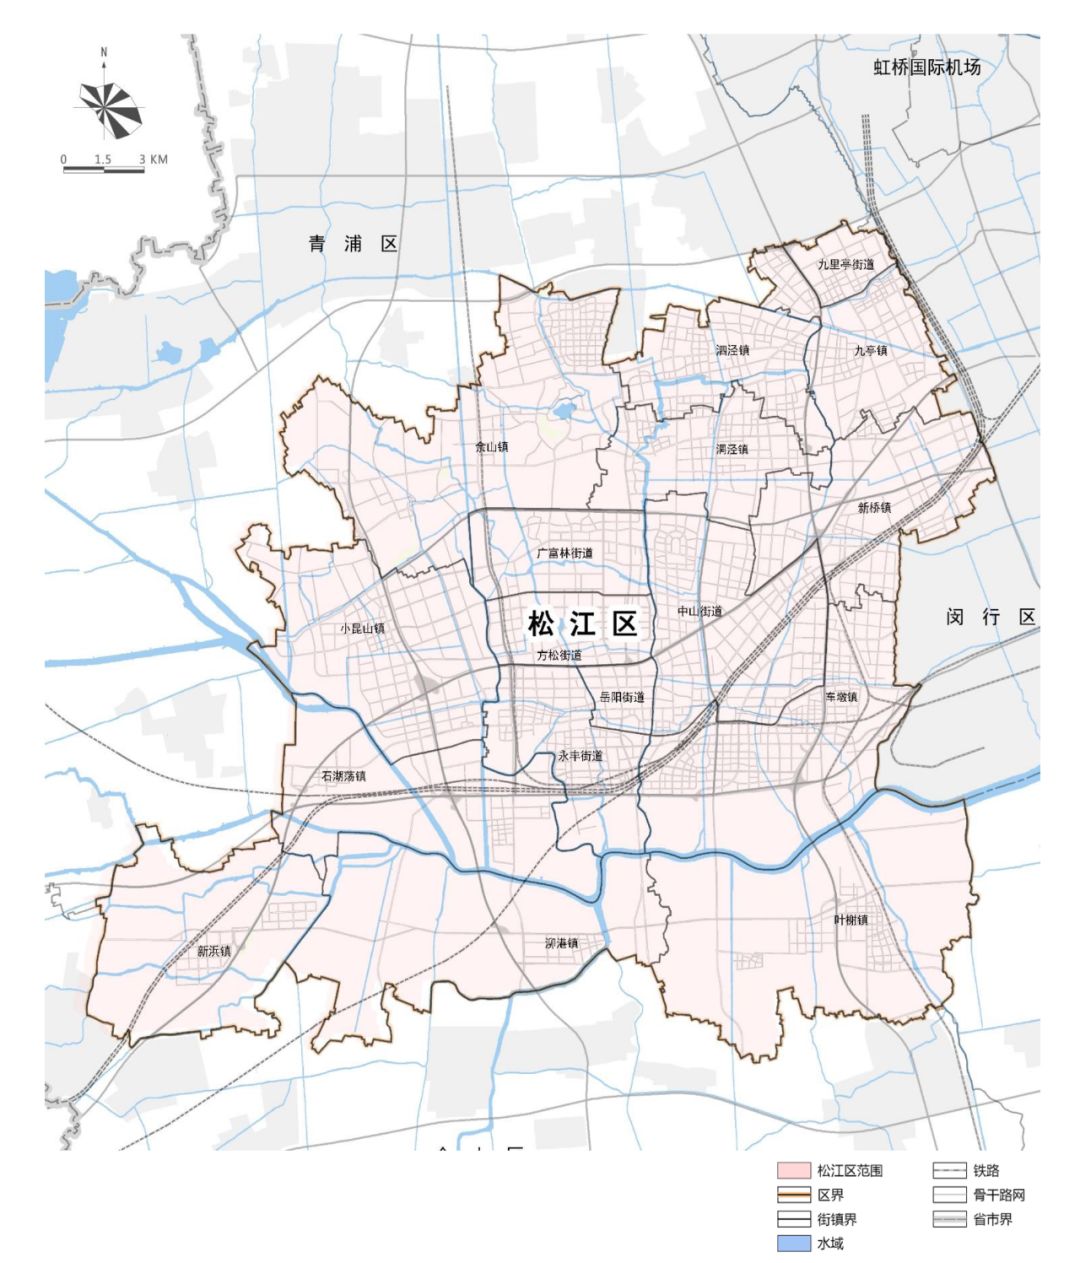 松江街道划分地图图片